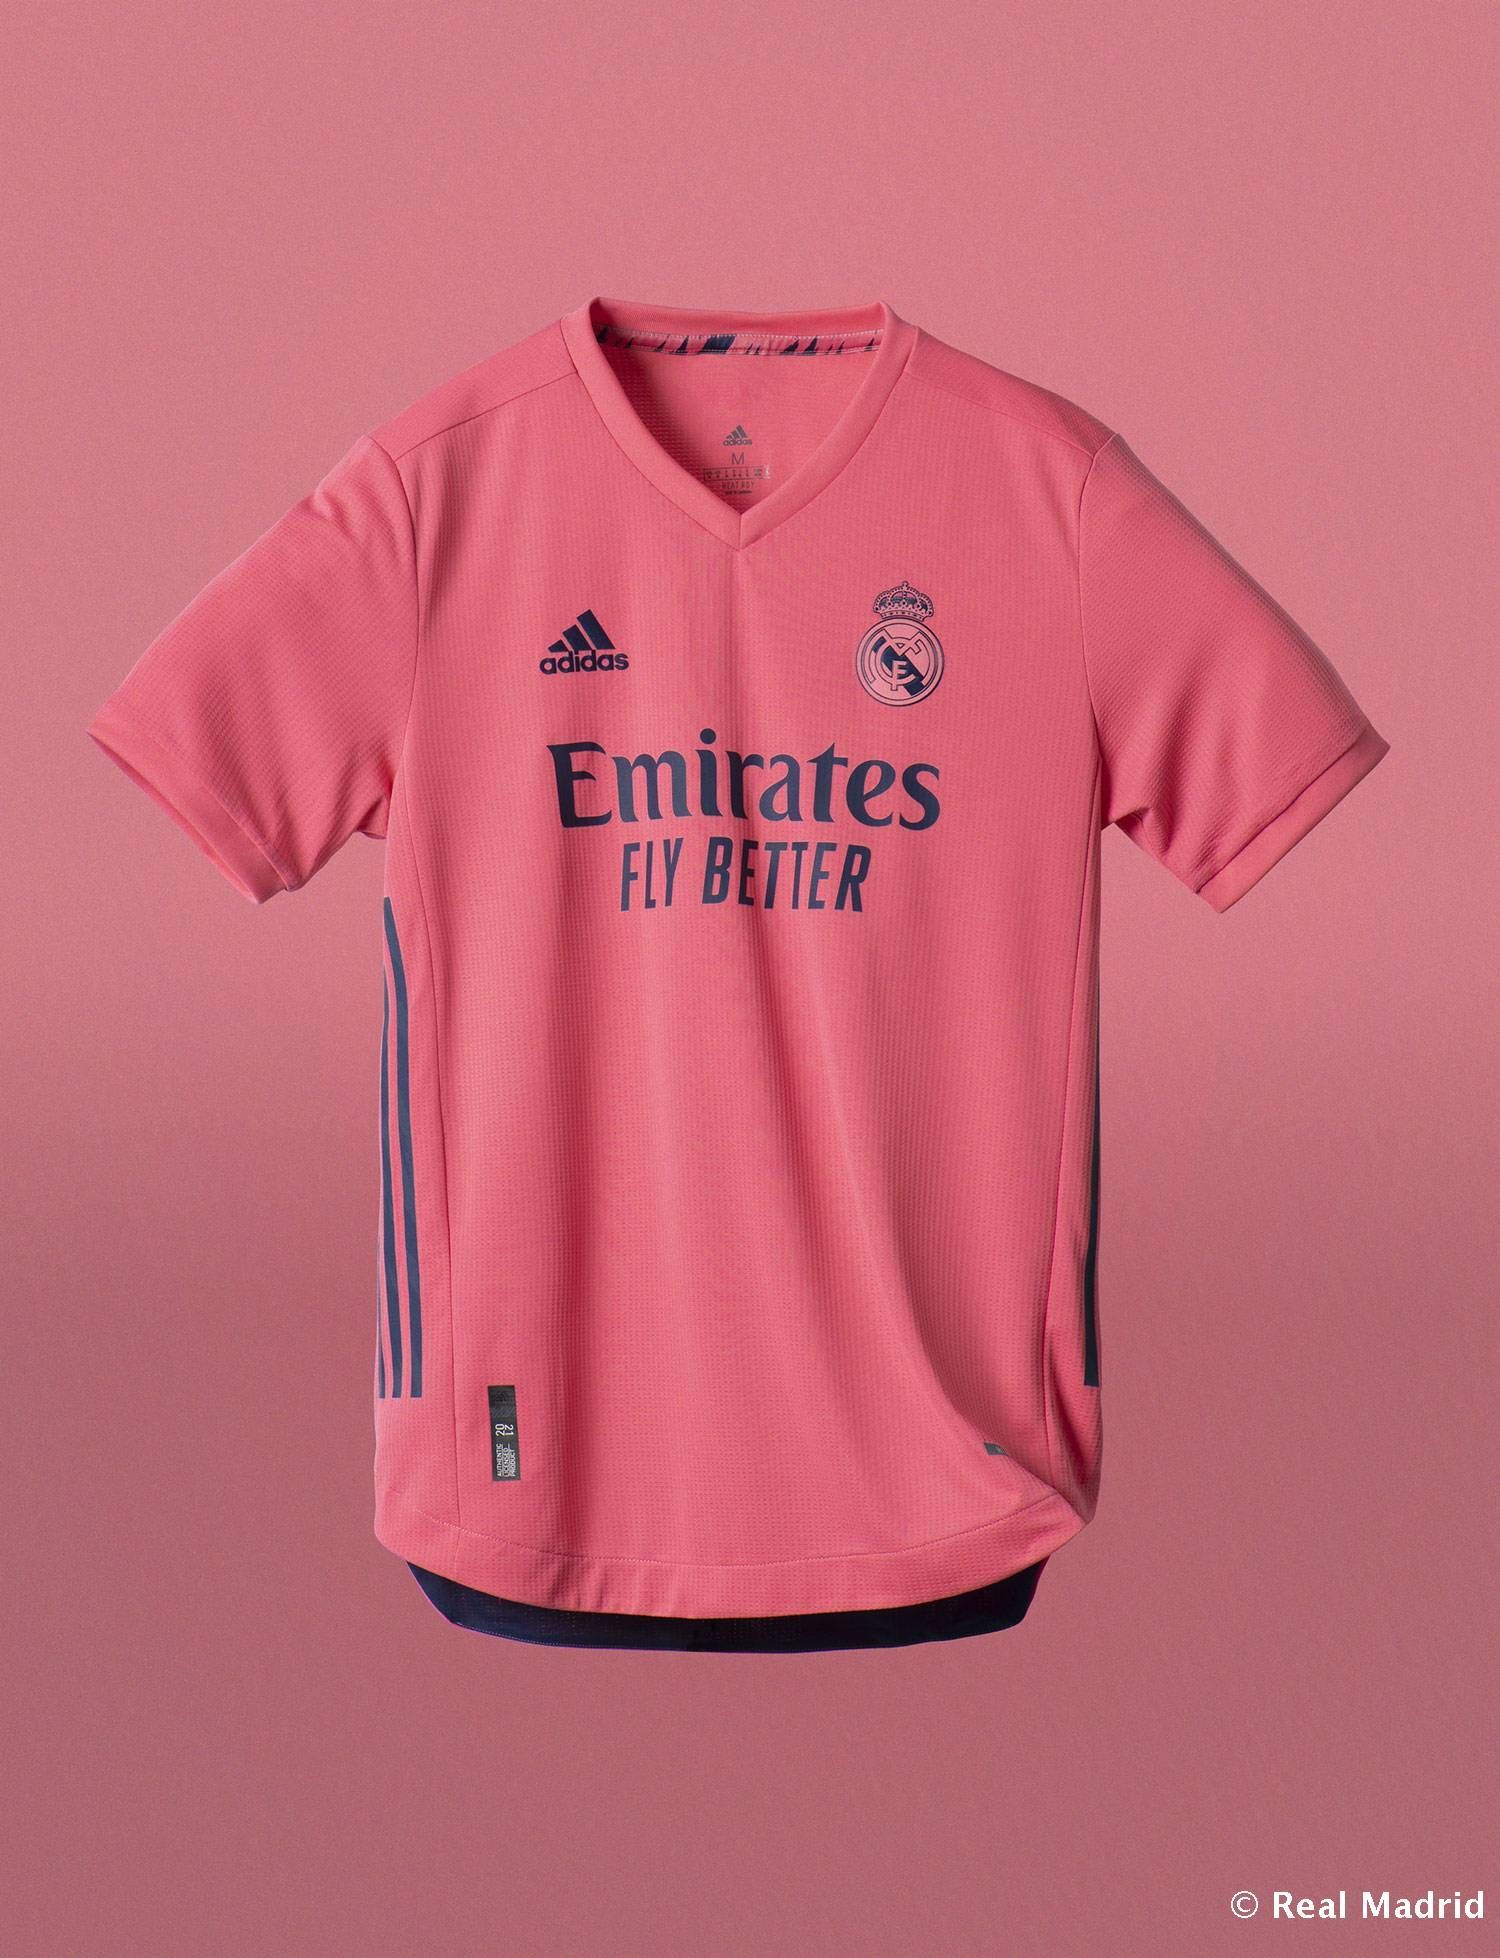 New Shirts For 2020 21 Season. Photo. Real Madrid CF. Real Madrid, Real Madrid Shirt, Real Madrid Kit